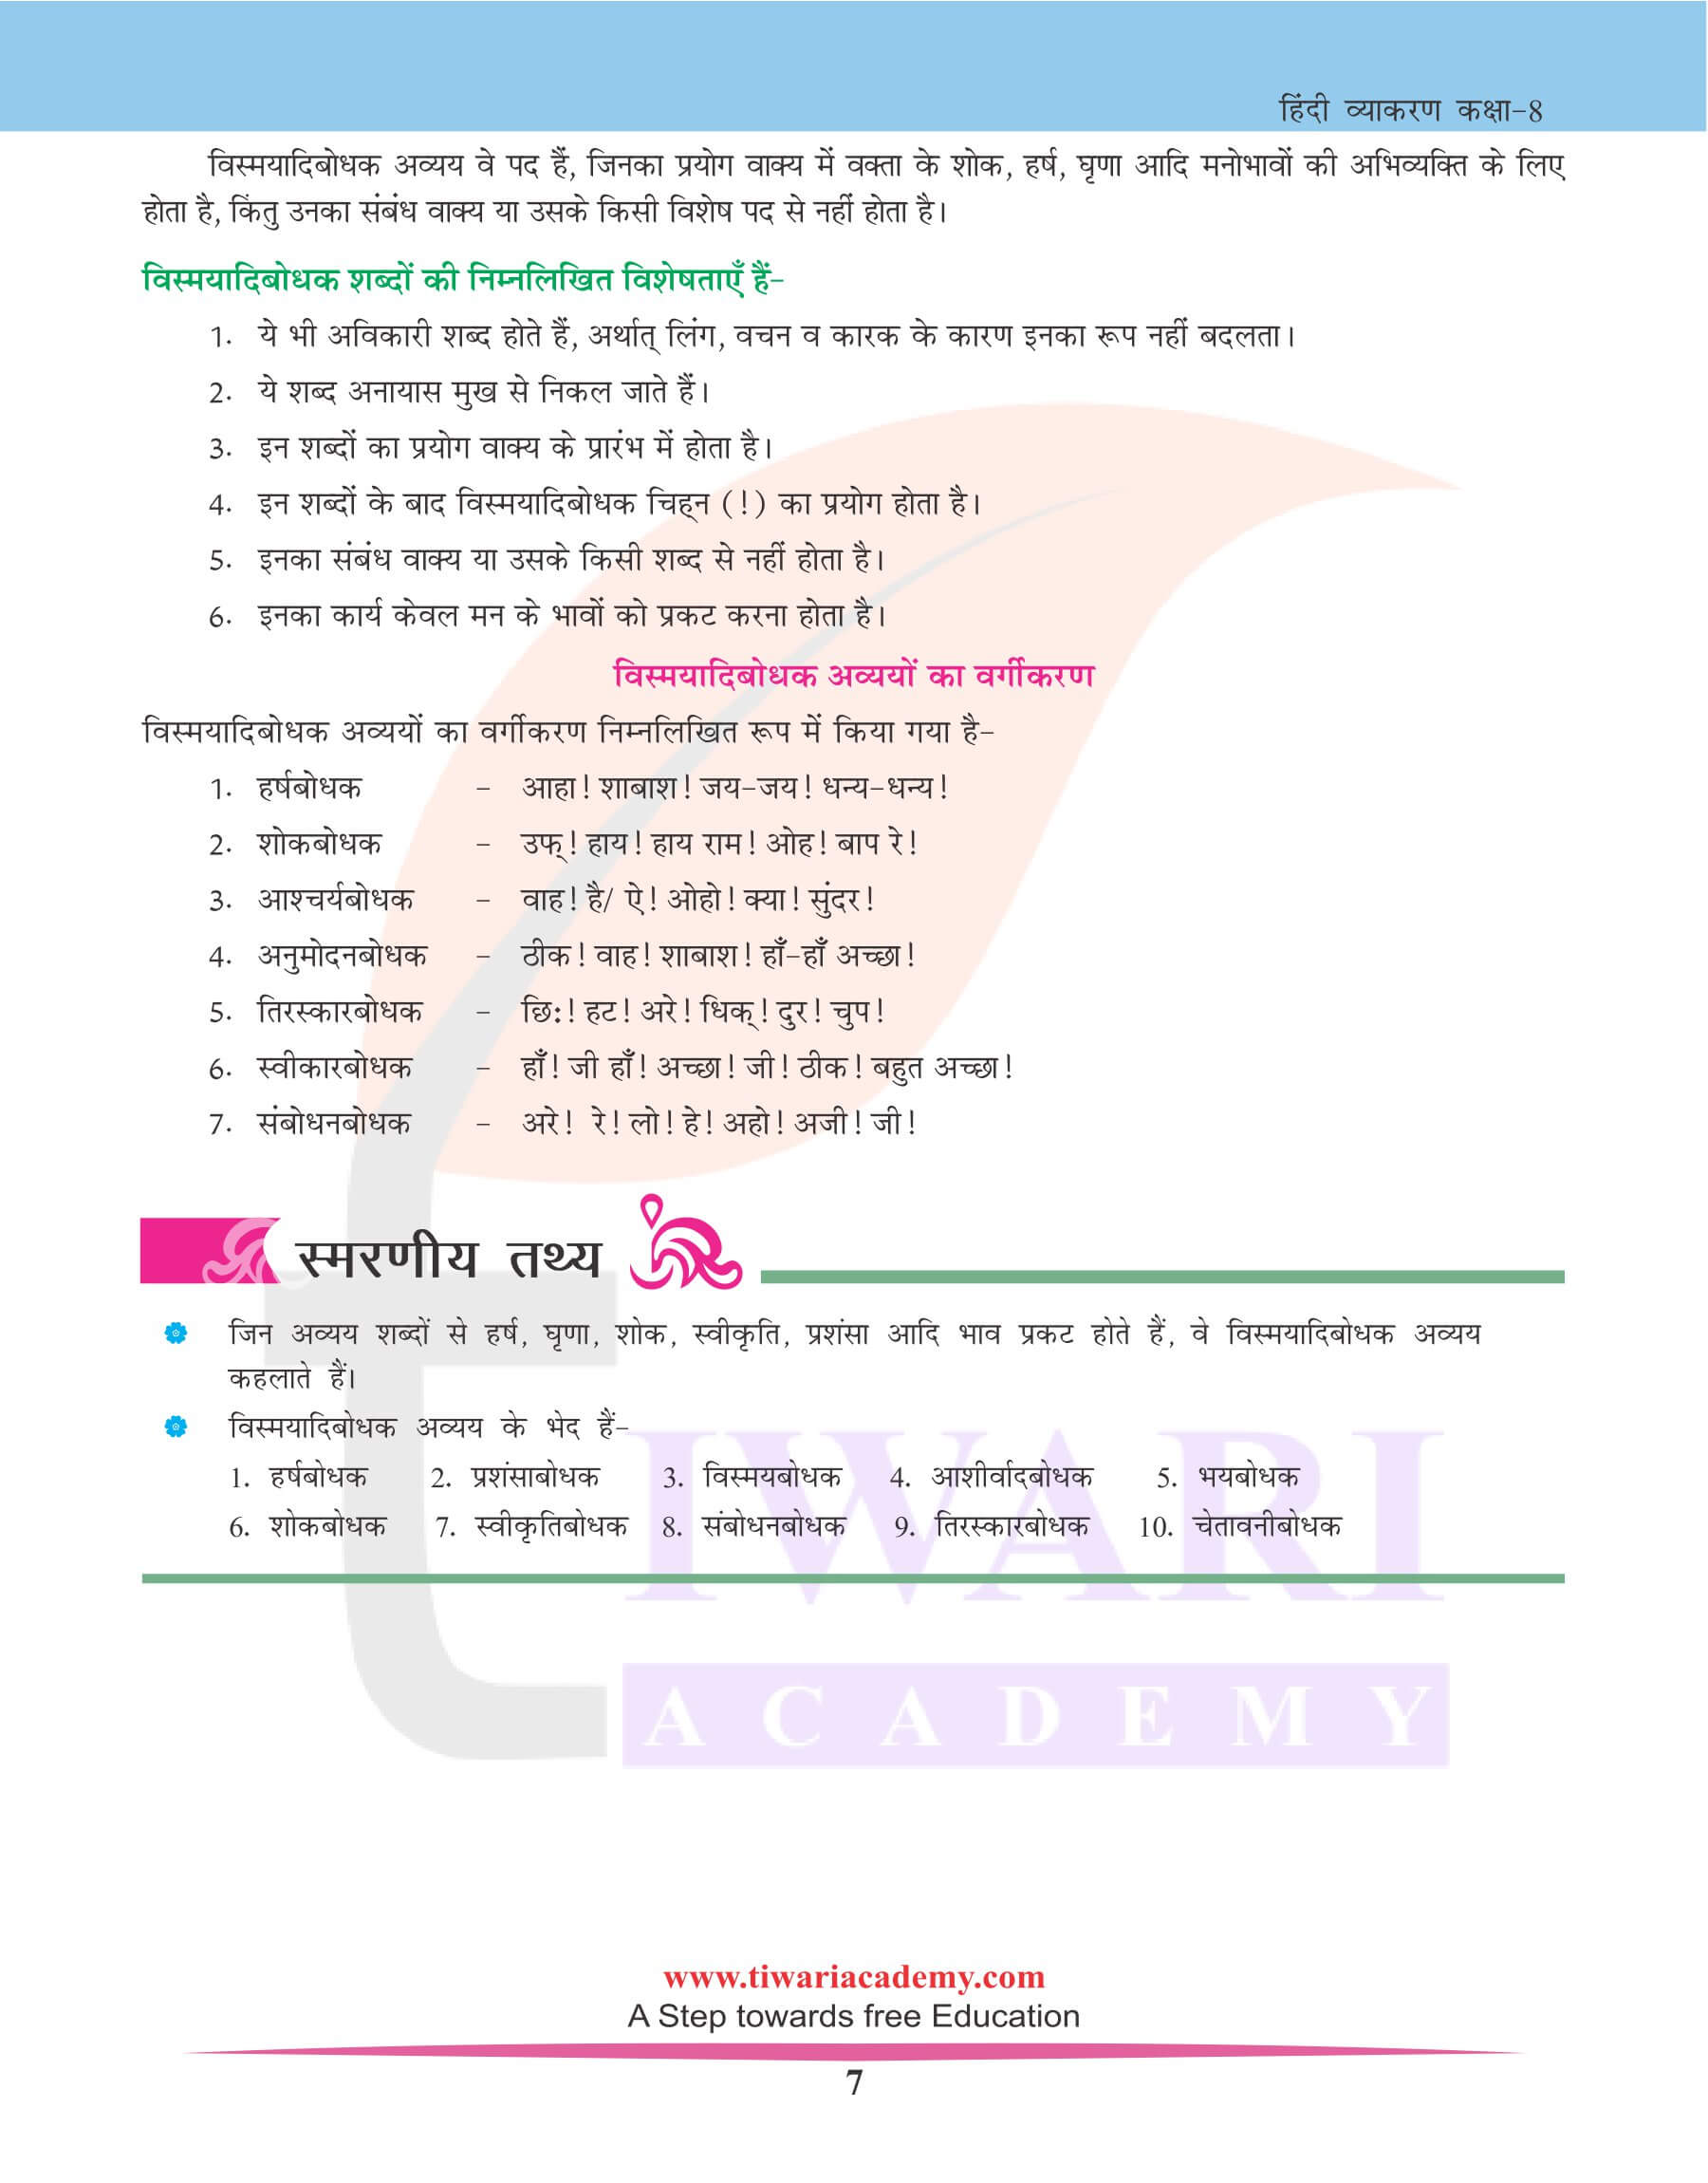 कक्षा 8 हिंदी व्याकरण अविकारी शब्द अभ्यास